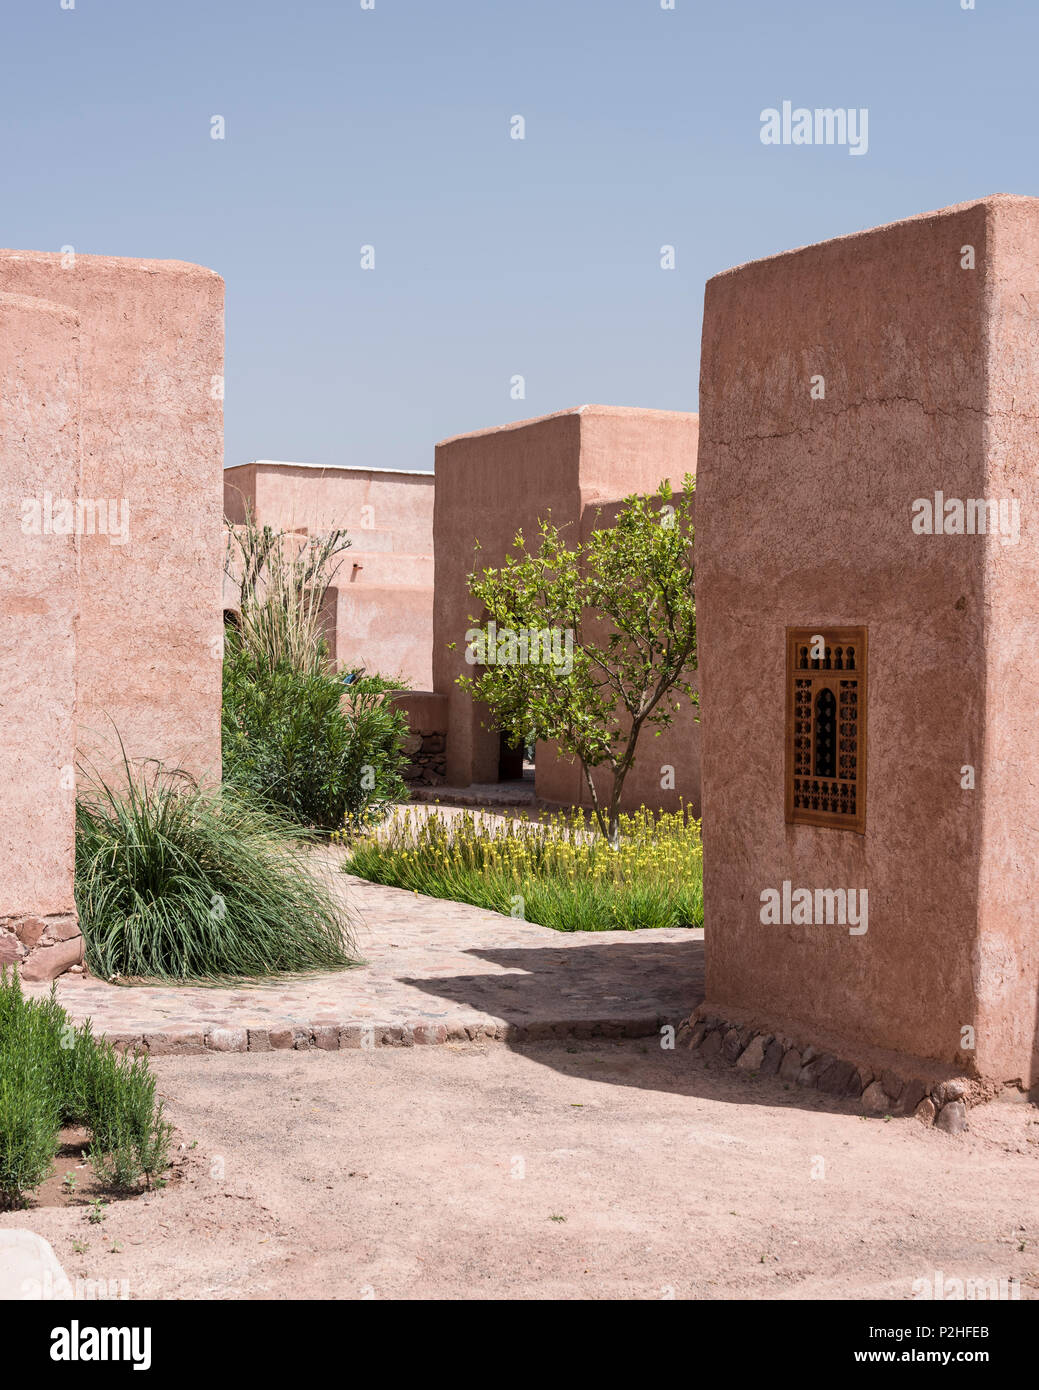 La façade extérieure de style Berbère adobe lodges avec cour intérieure de citronniers, bambous et plantes sauvages marocain Banque D'Images